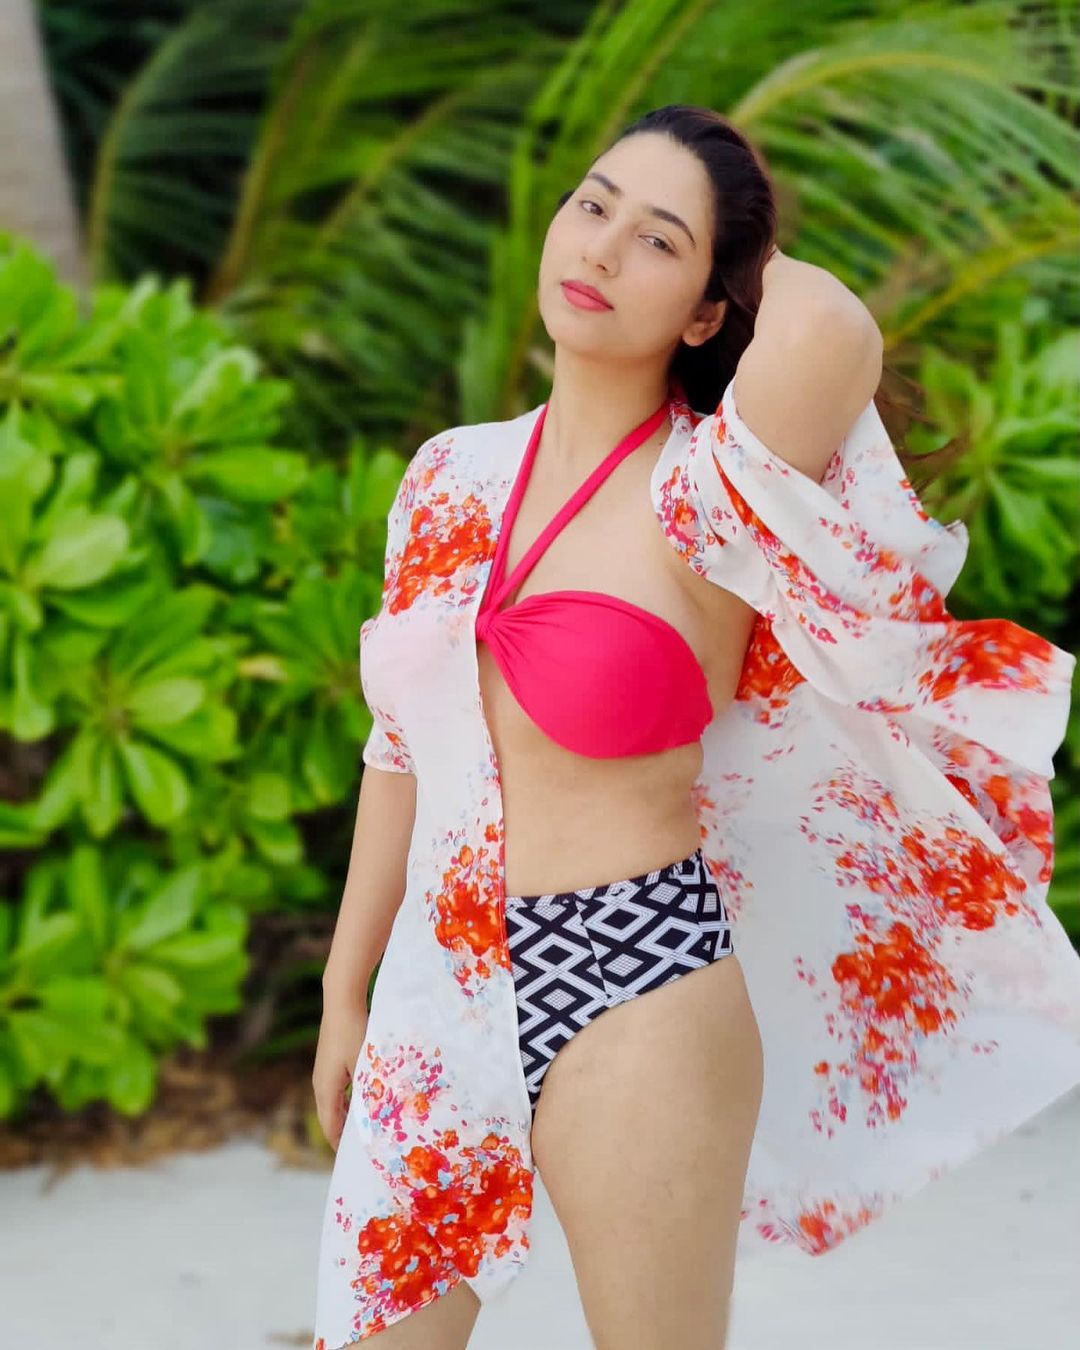 Disha Parmar's sizzling bikini avatar